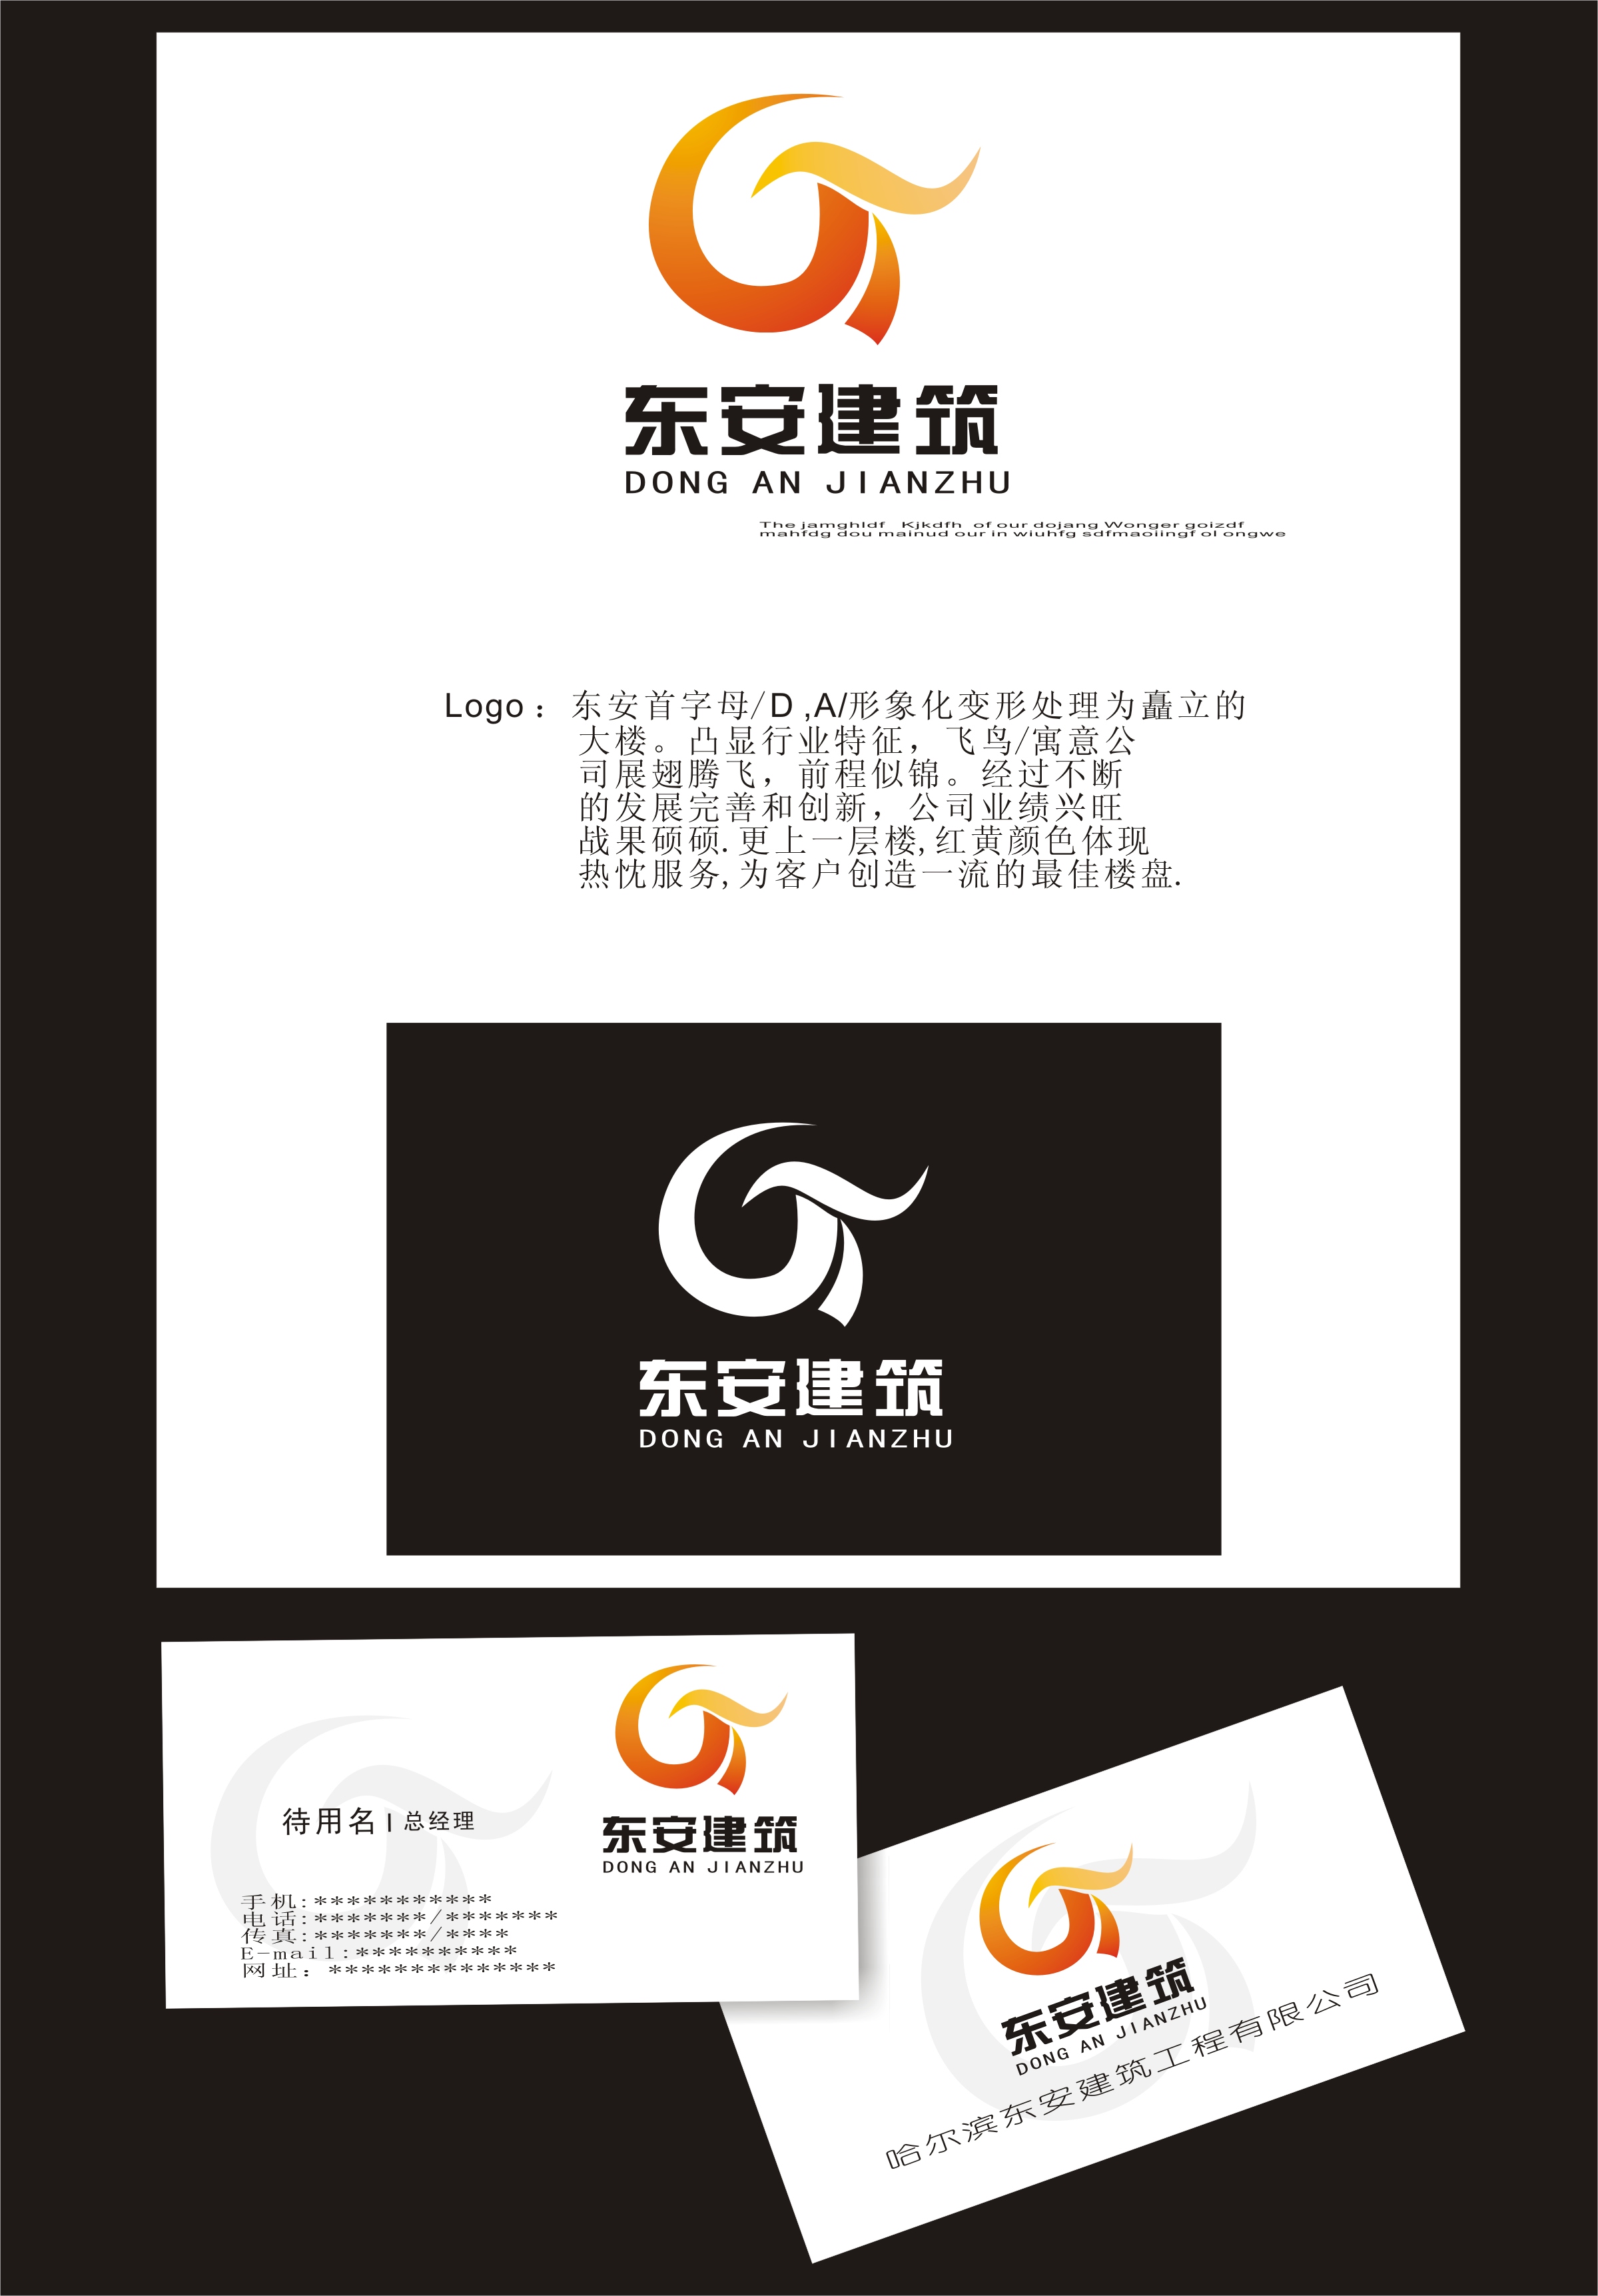 哈尔滨东安建筑公司logo设计 